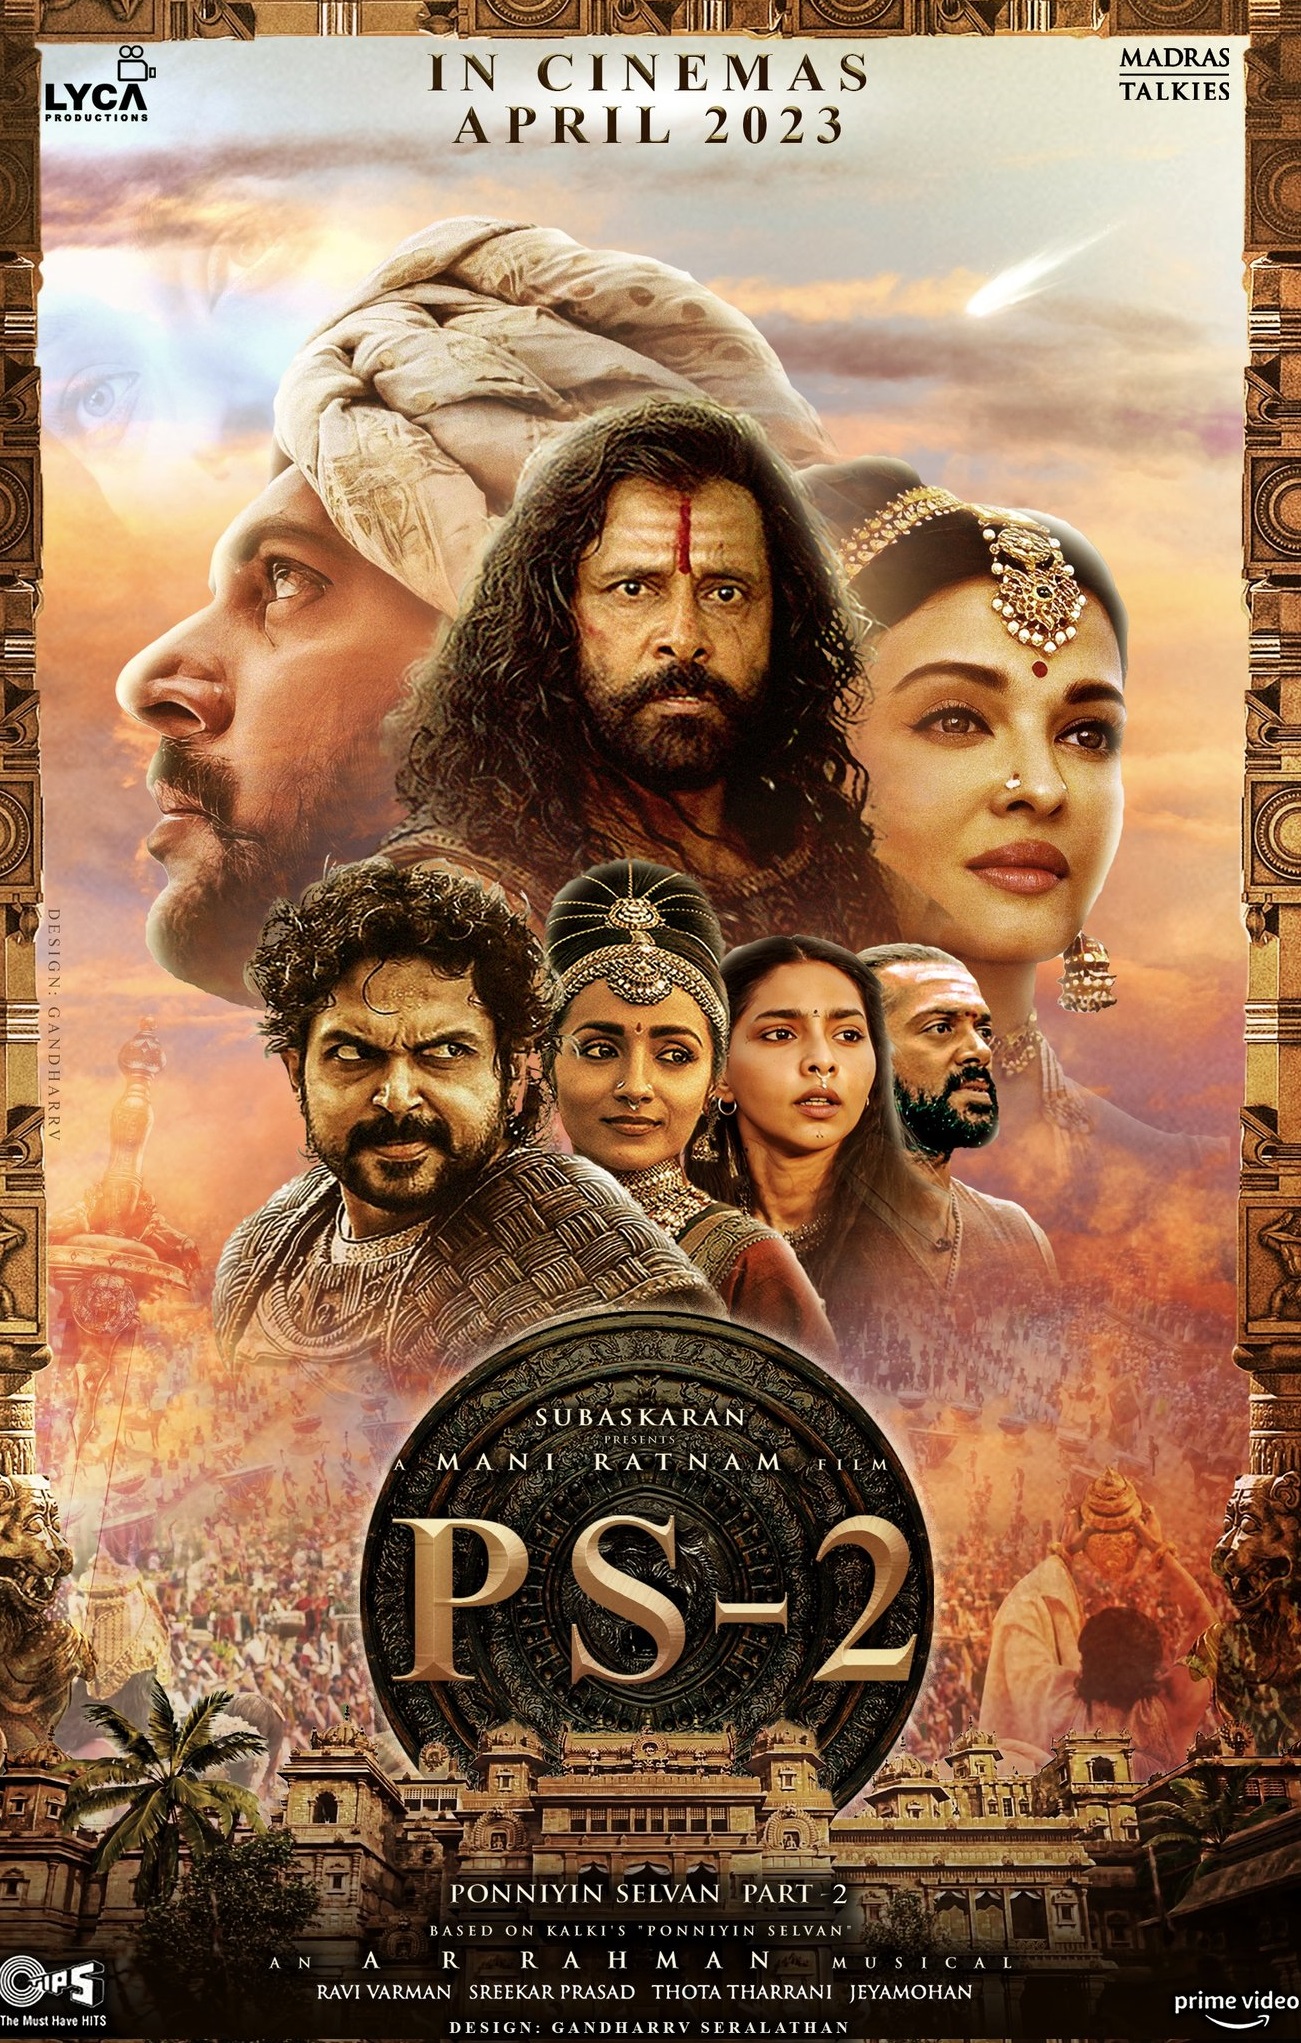 Ponniyin Selvan - Part 2 (2023) 2023 Tamil Action Movie Online